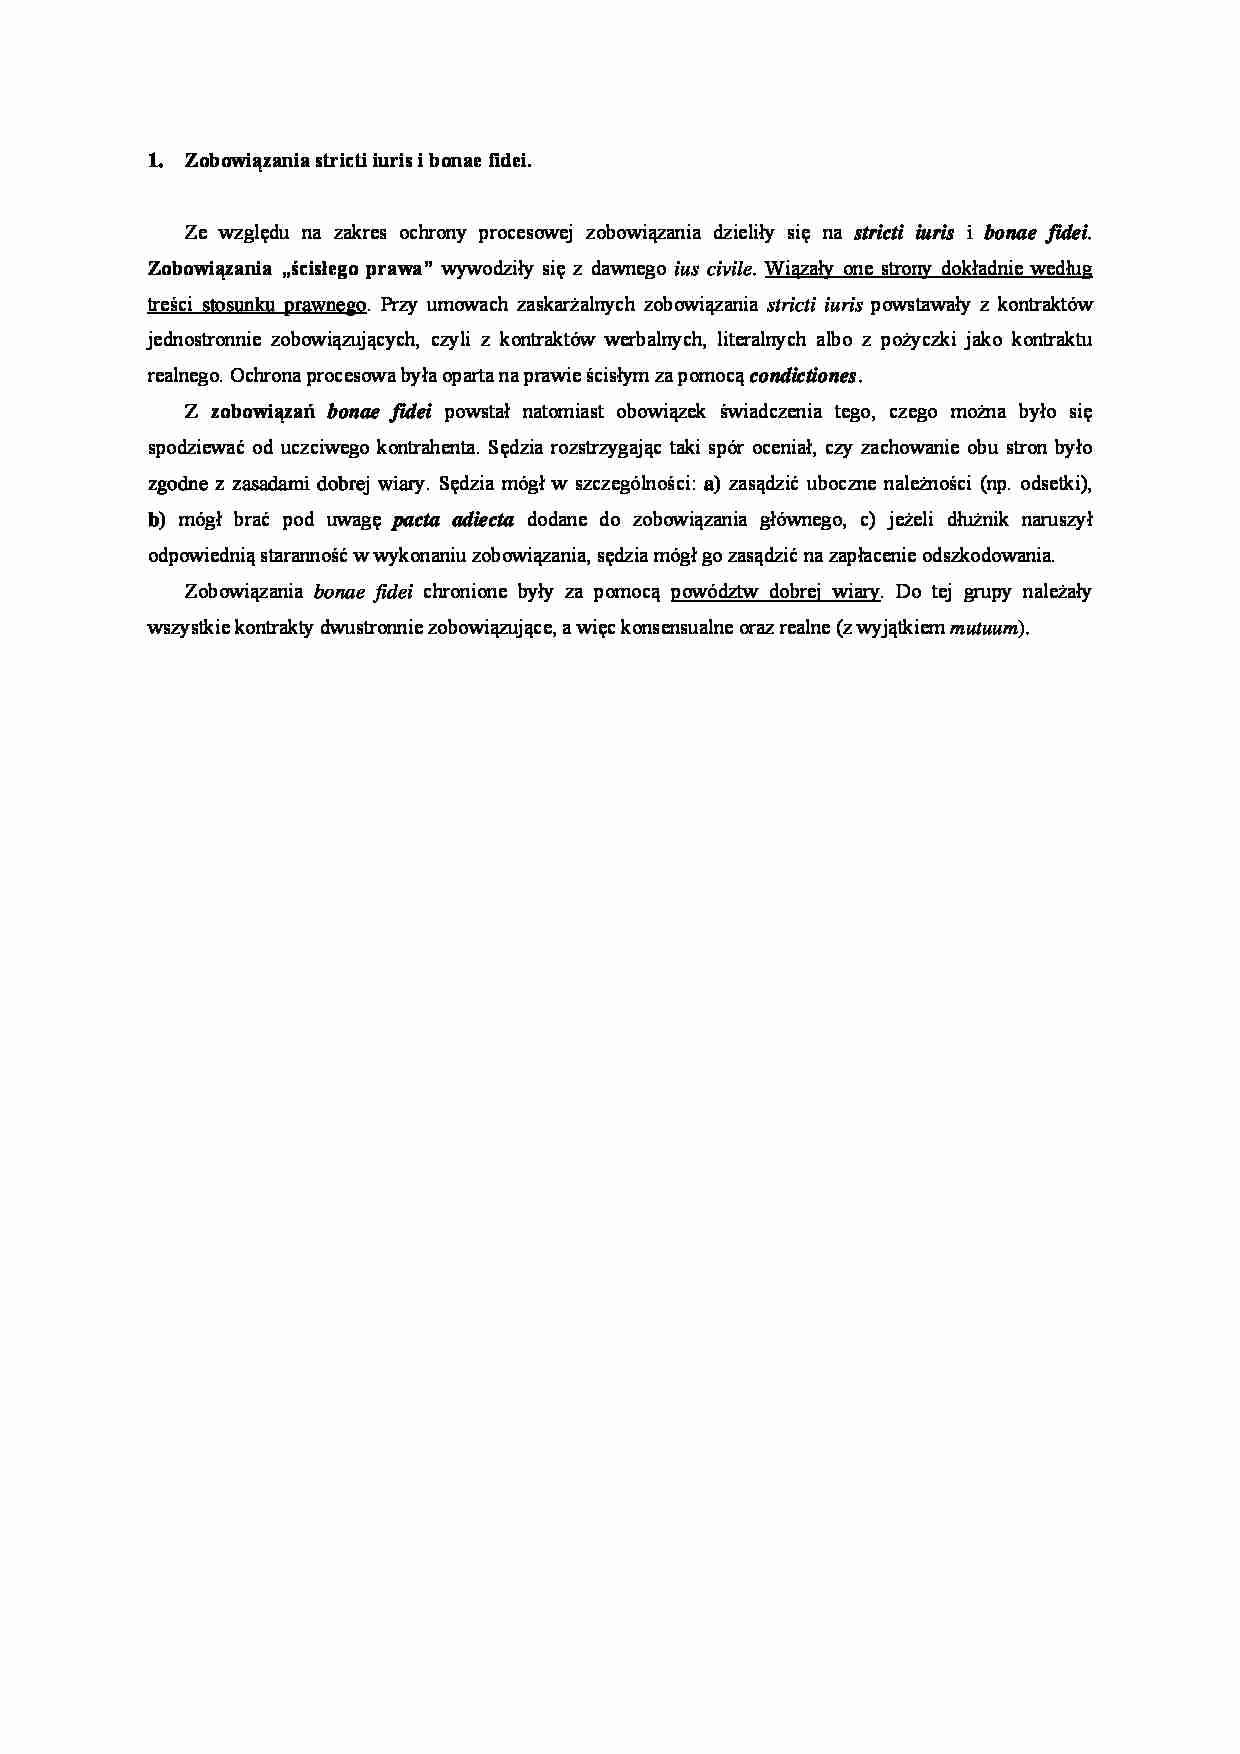 Zobowiązanie stricti iuris i bonae fidei- opracowanie - strona 1